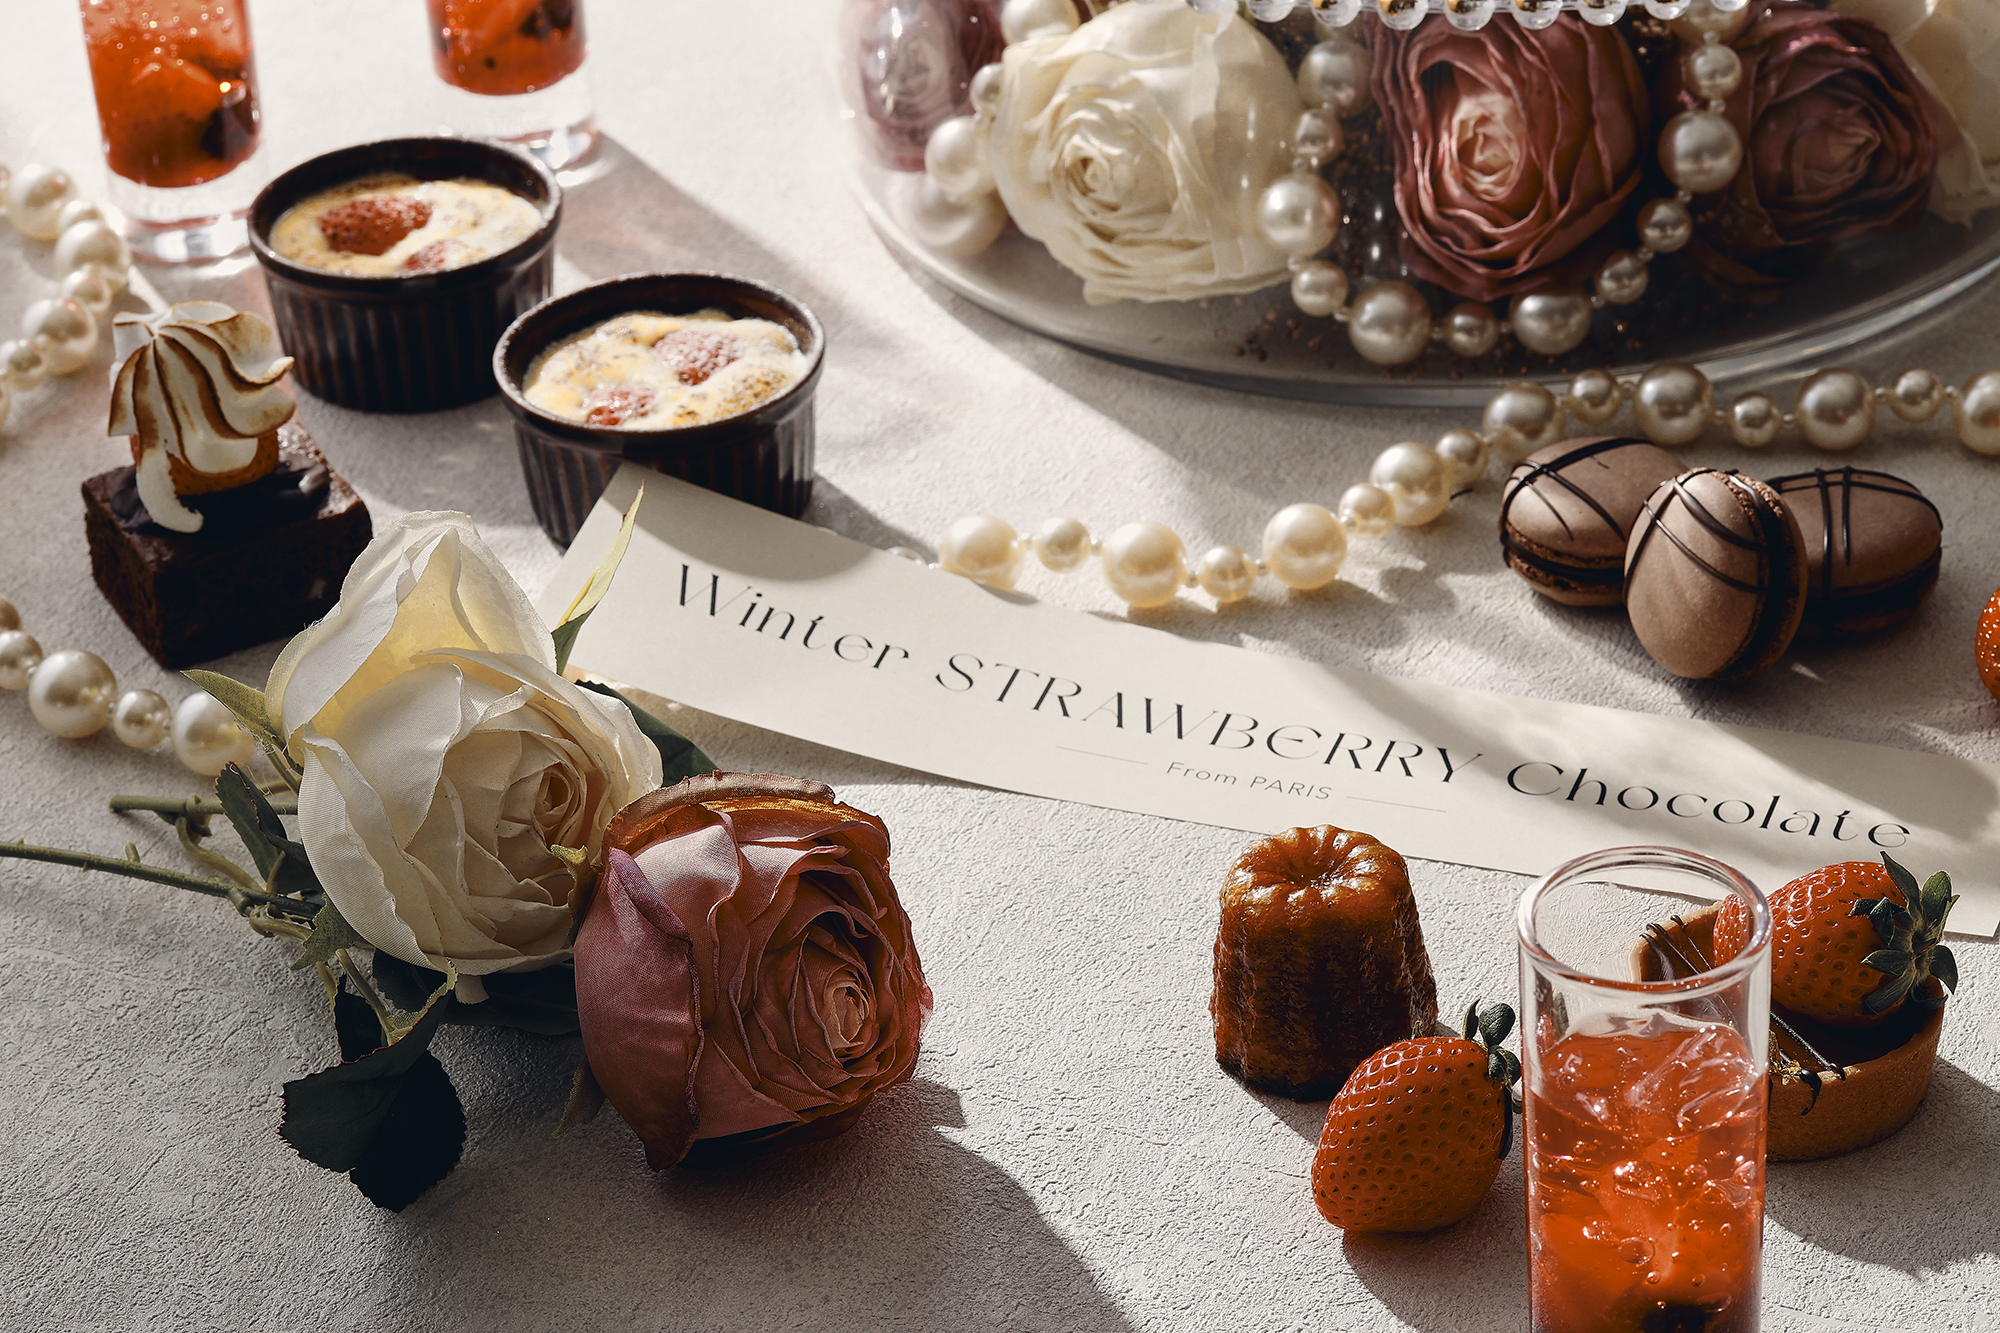 『ウィンターストロベリーショコラ アフタヌーンティー』 新登場のサブ画像2_旬の苺とチョコレートをふんだんに使用したスイーツがラインナップ